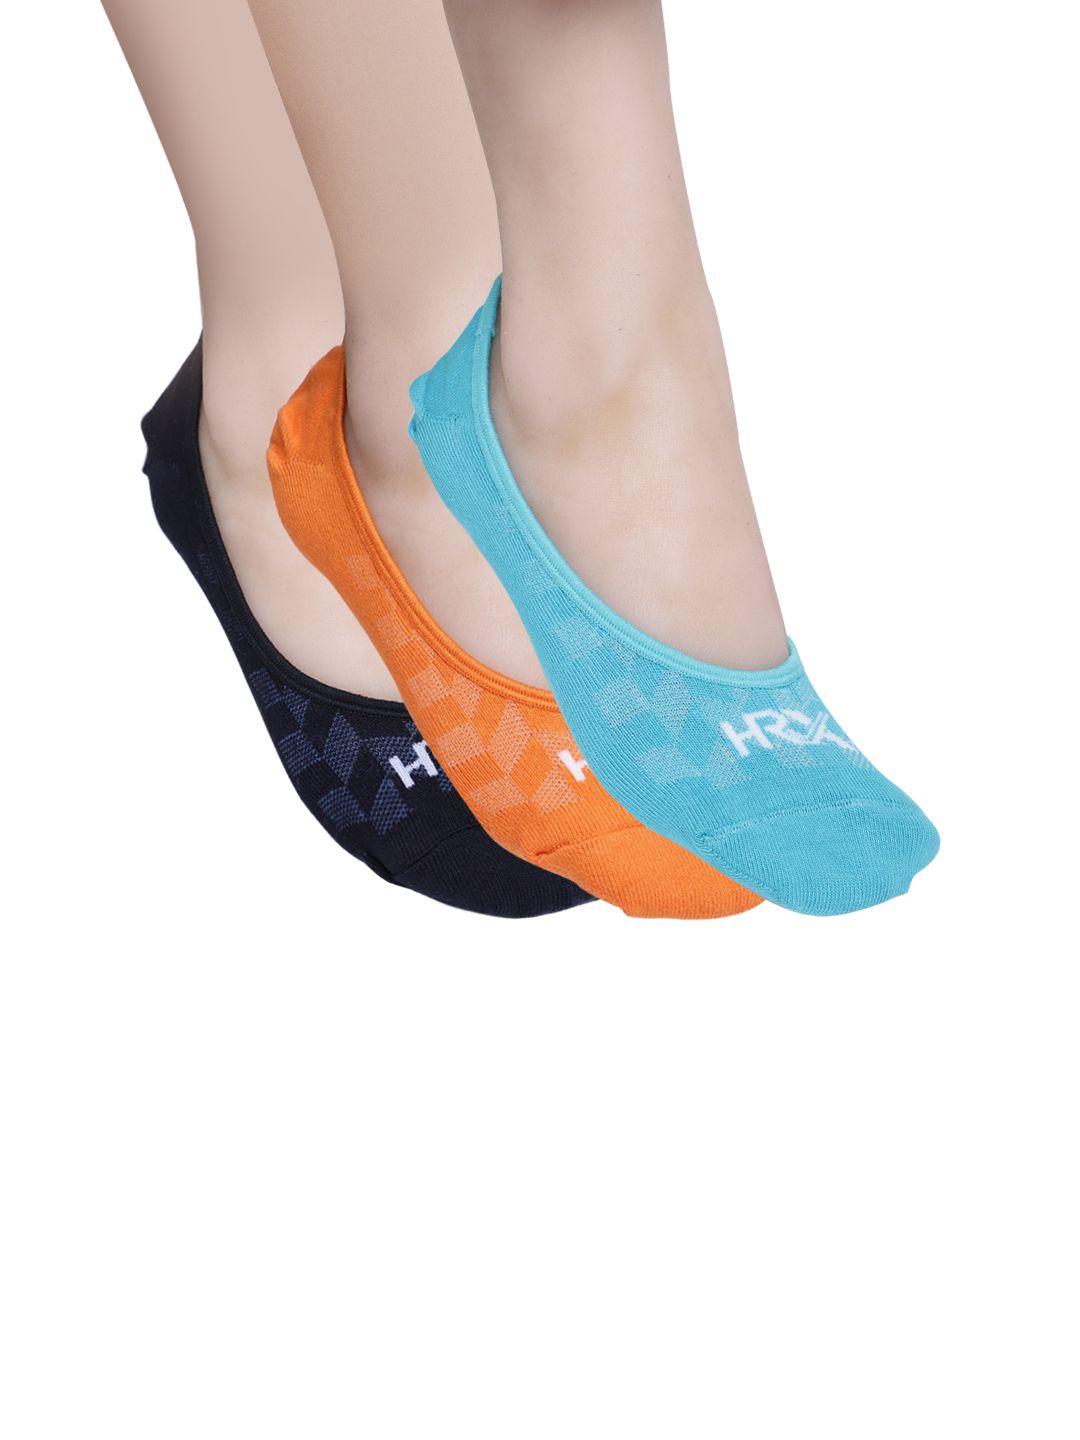 hrx by hrithik roshan women pack of 3 loafer/shoeliner socks